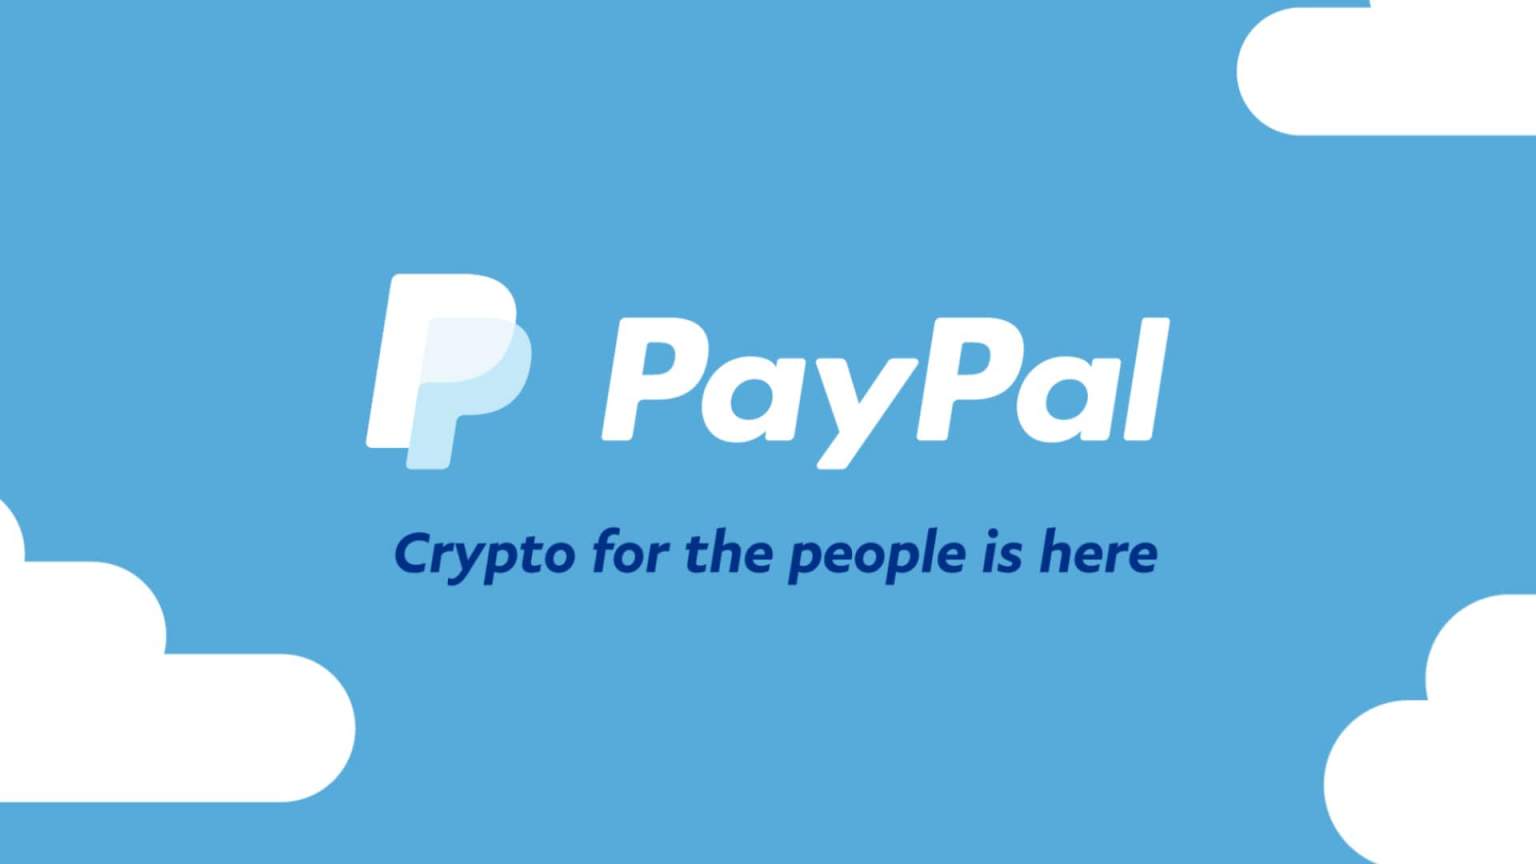 can i buy crypto via paypal